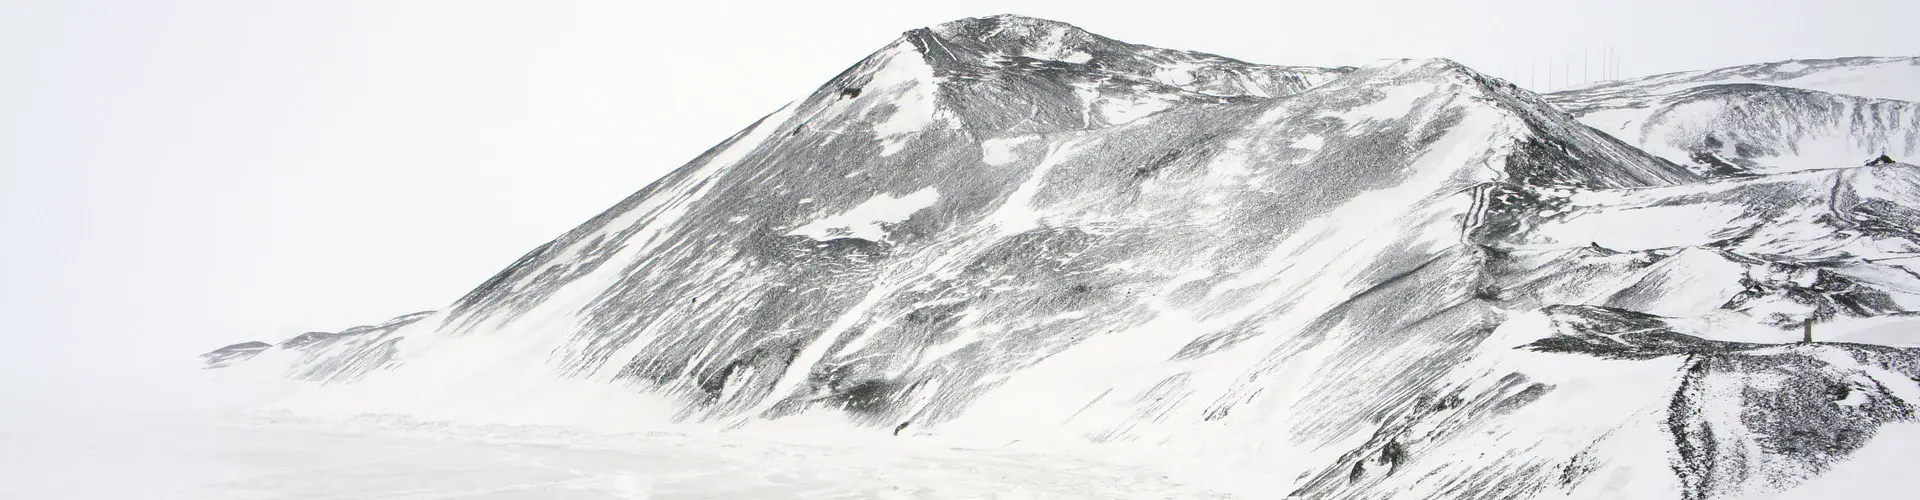 Antarctic ridge (Credit: Tarun Luthra, distributed via imaggeo.egu.eu)